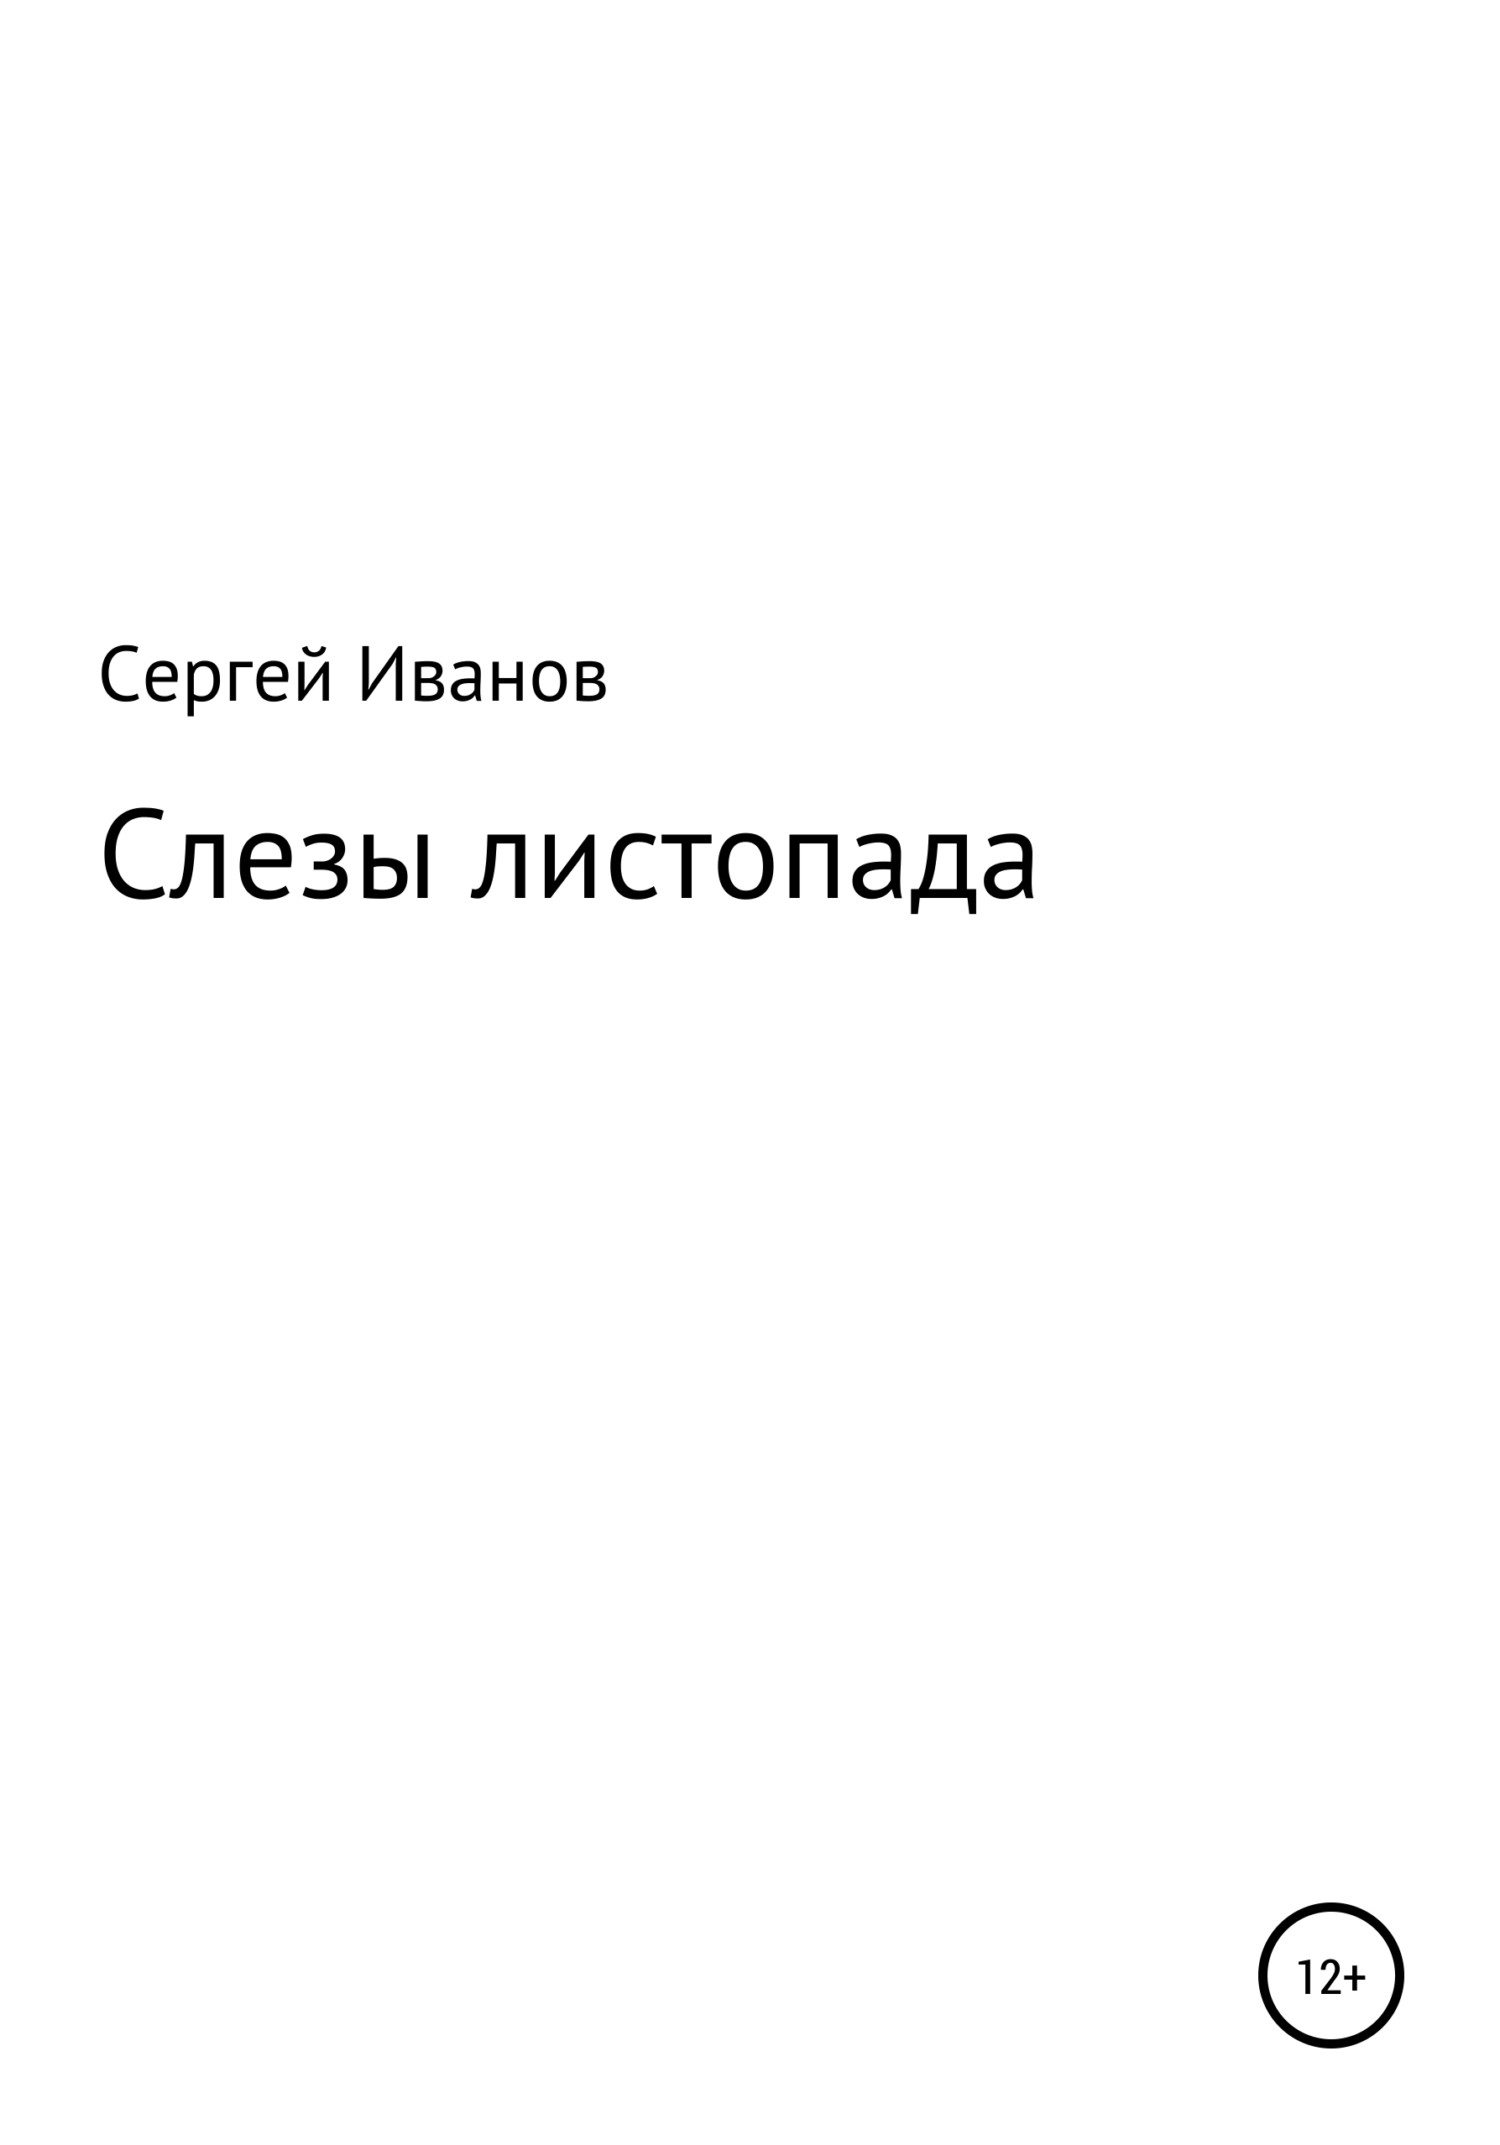 Слезы листопада - Сергей Федорович Иванов